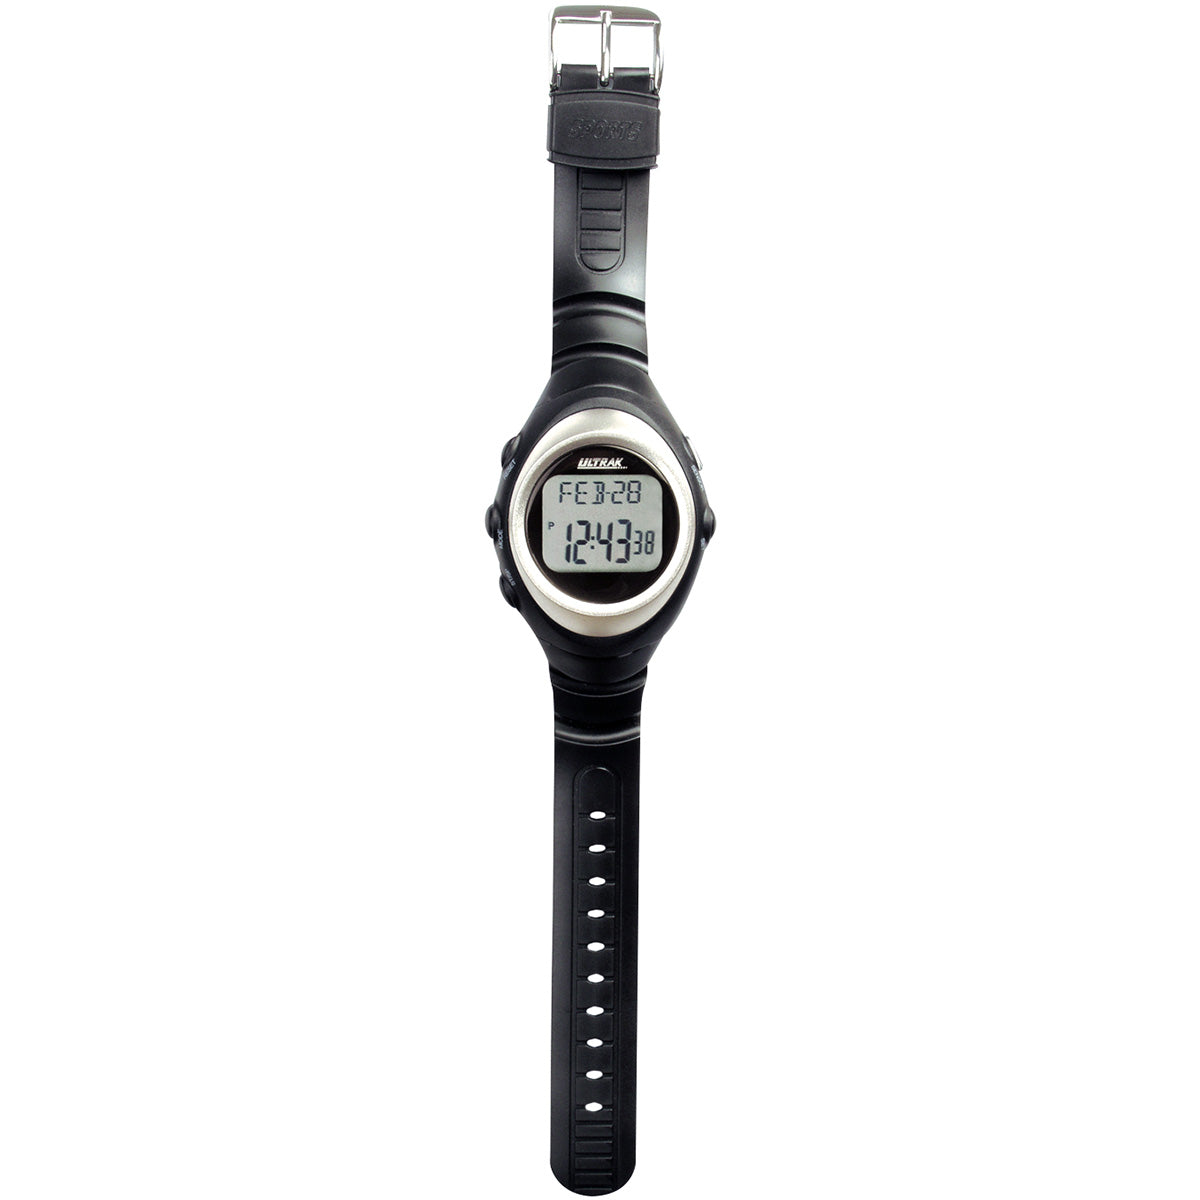 Ultrak 600 Pulsemeter Watch Ultrak